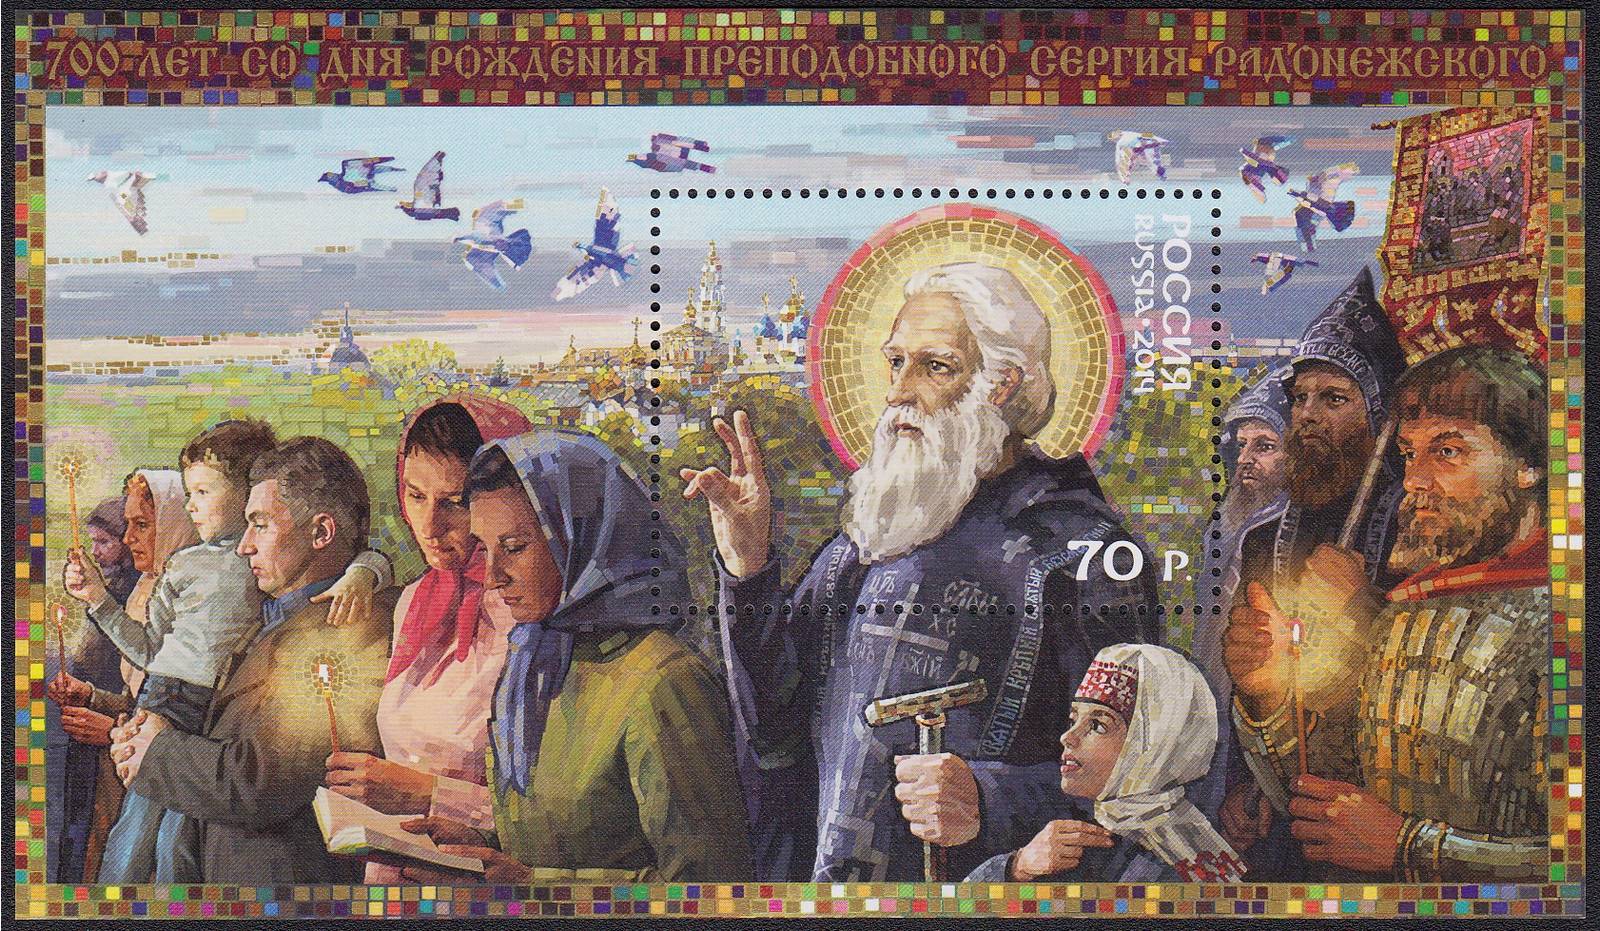 700 лет со дня рождения Преподобного Сергия Радонежского